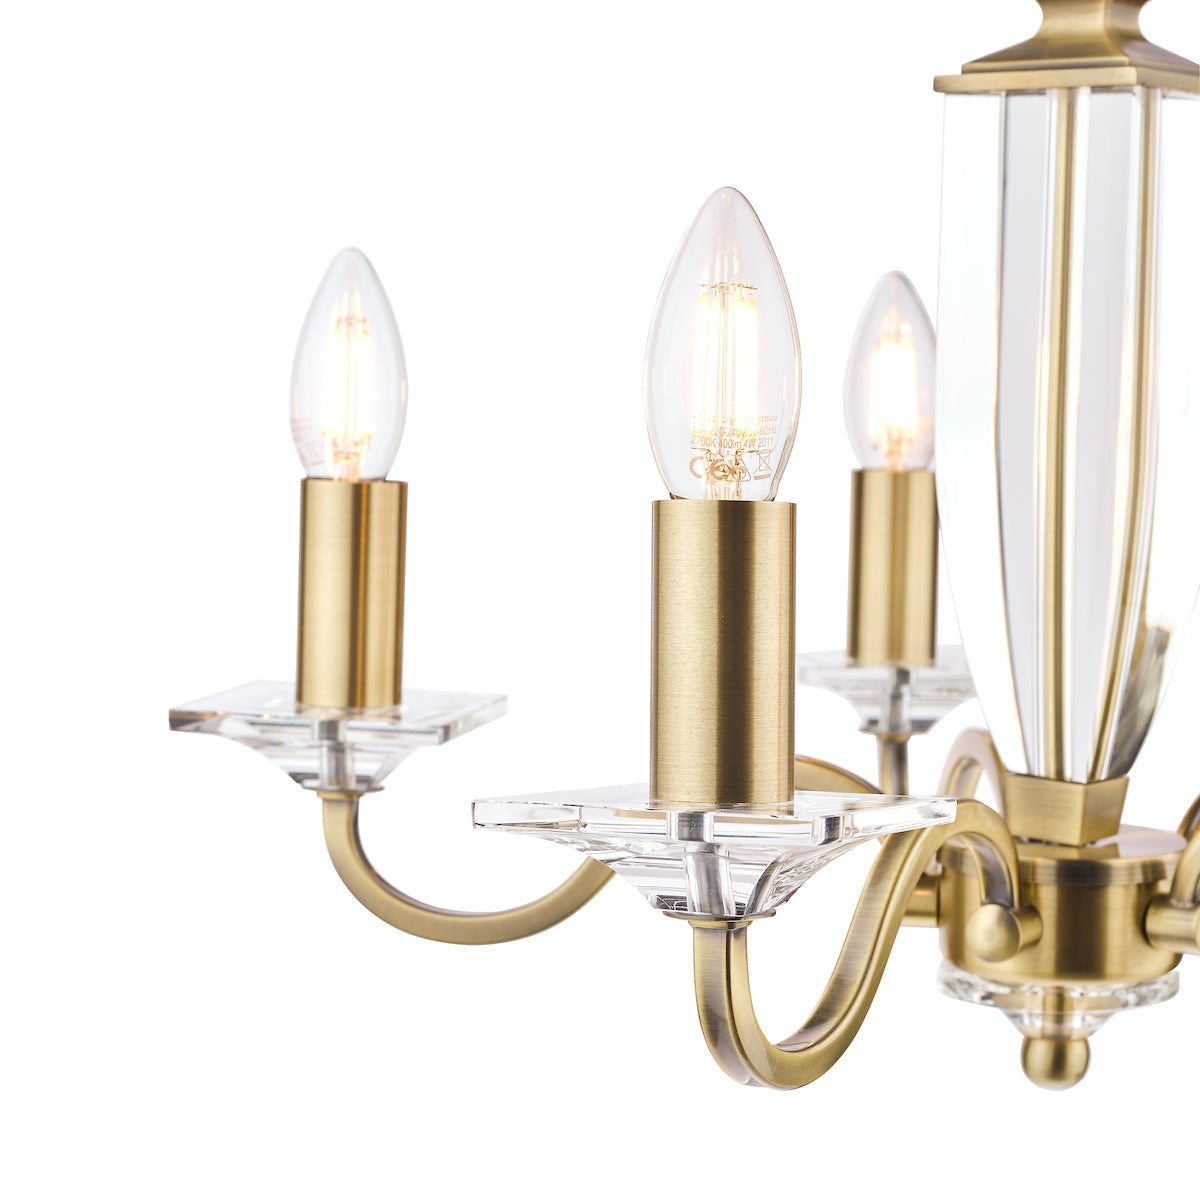 Laura Ashley Carson Cut Glass & Antique Brass LA3552999-Q   5 Light Ceiling Light Chandelier